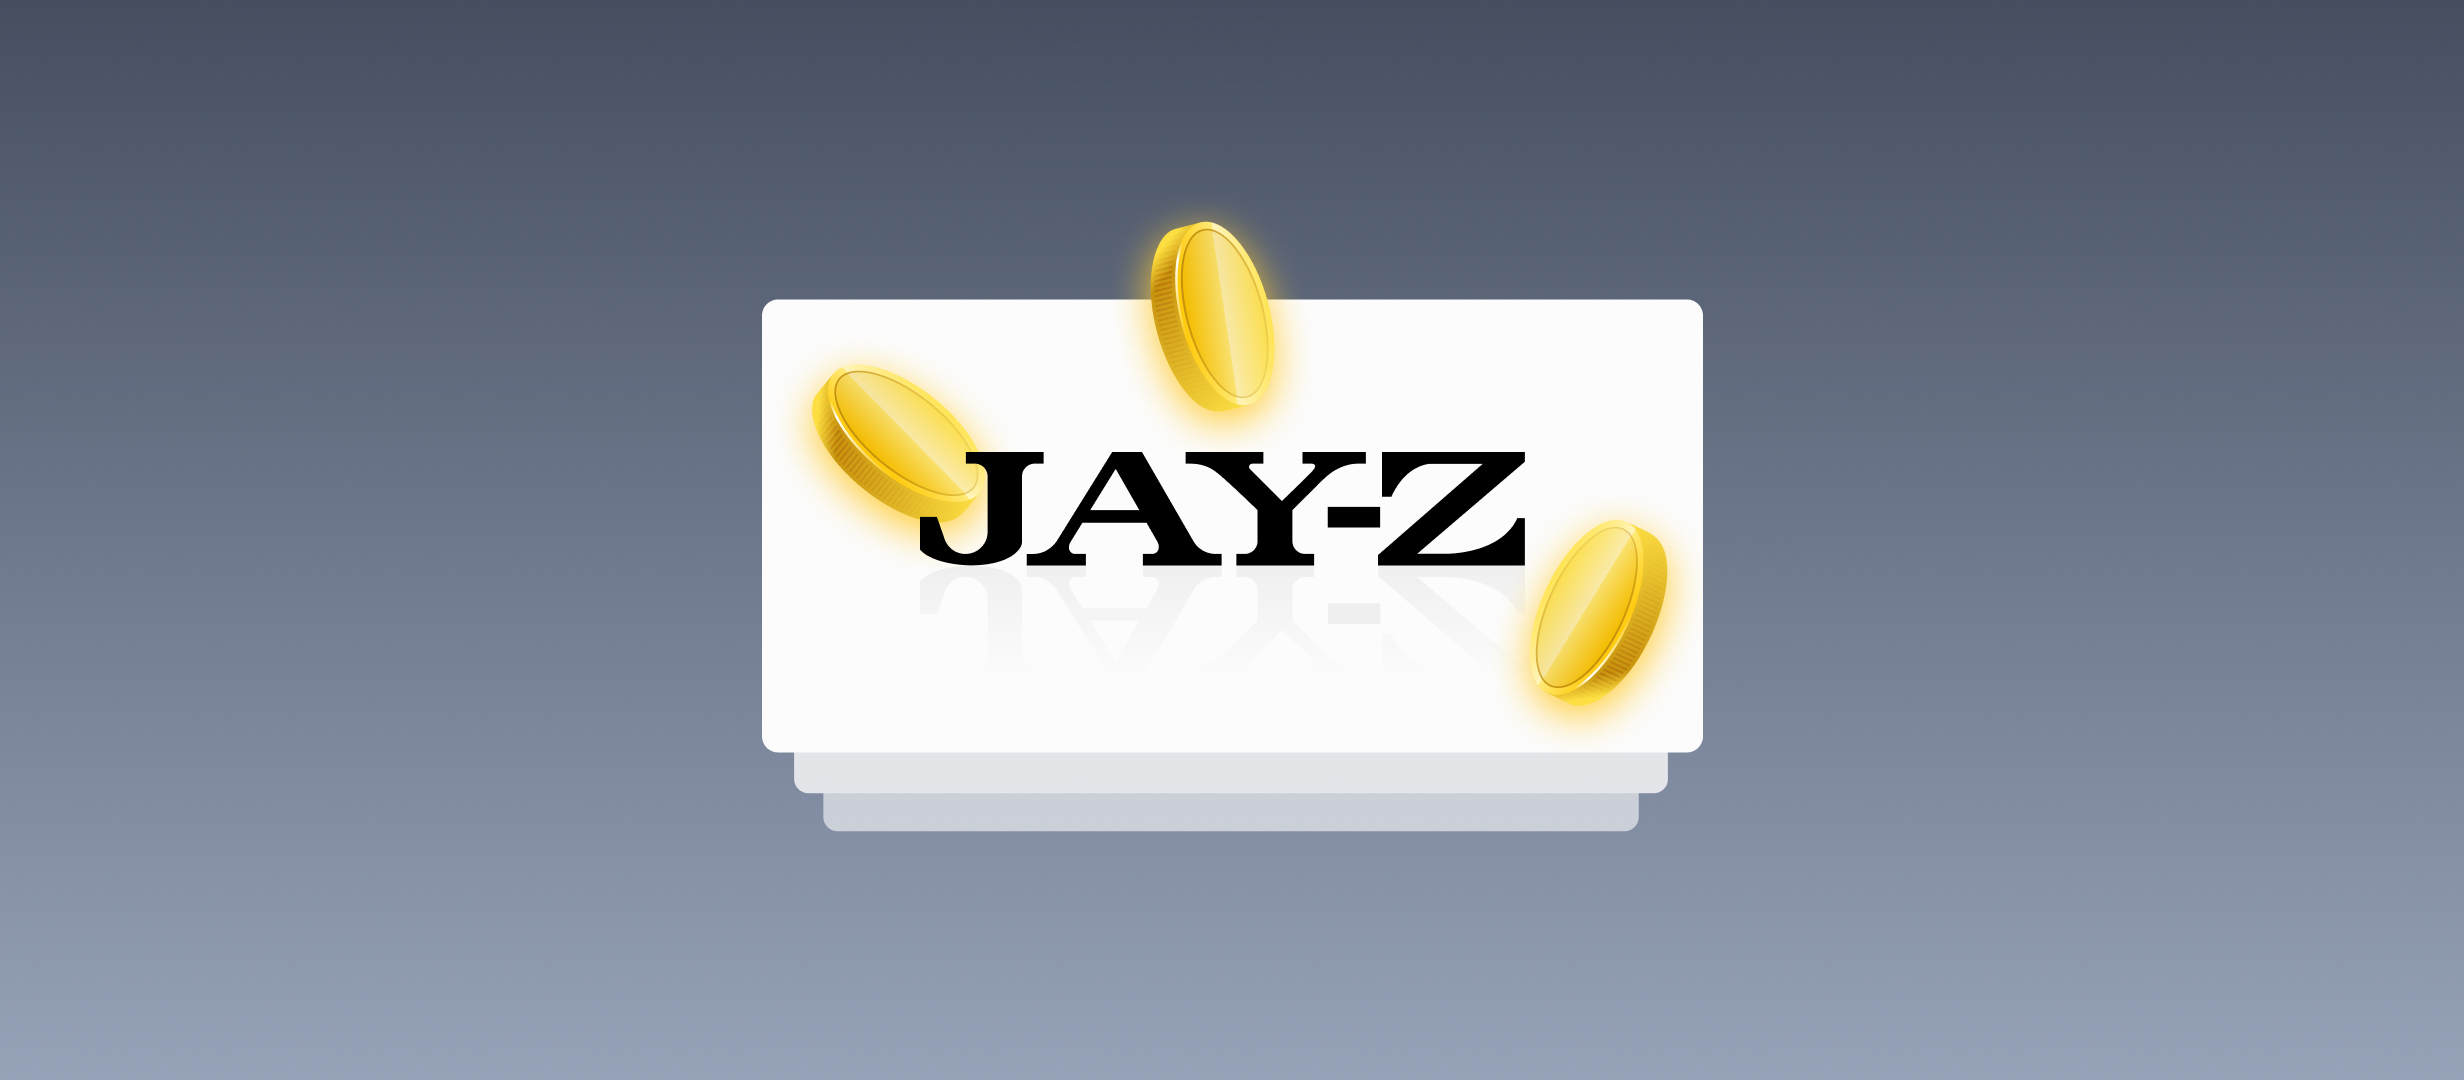 Jay-Z занялся созданием букмекерской компании